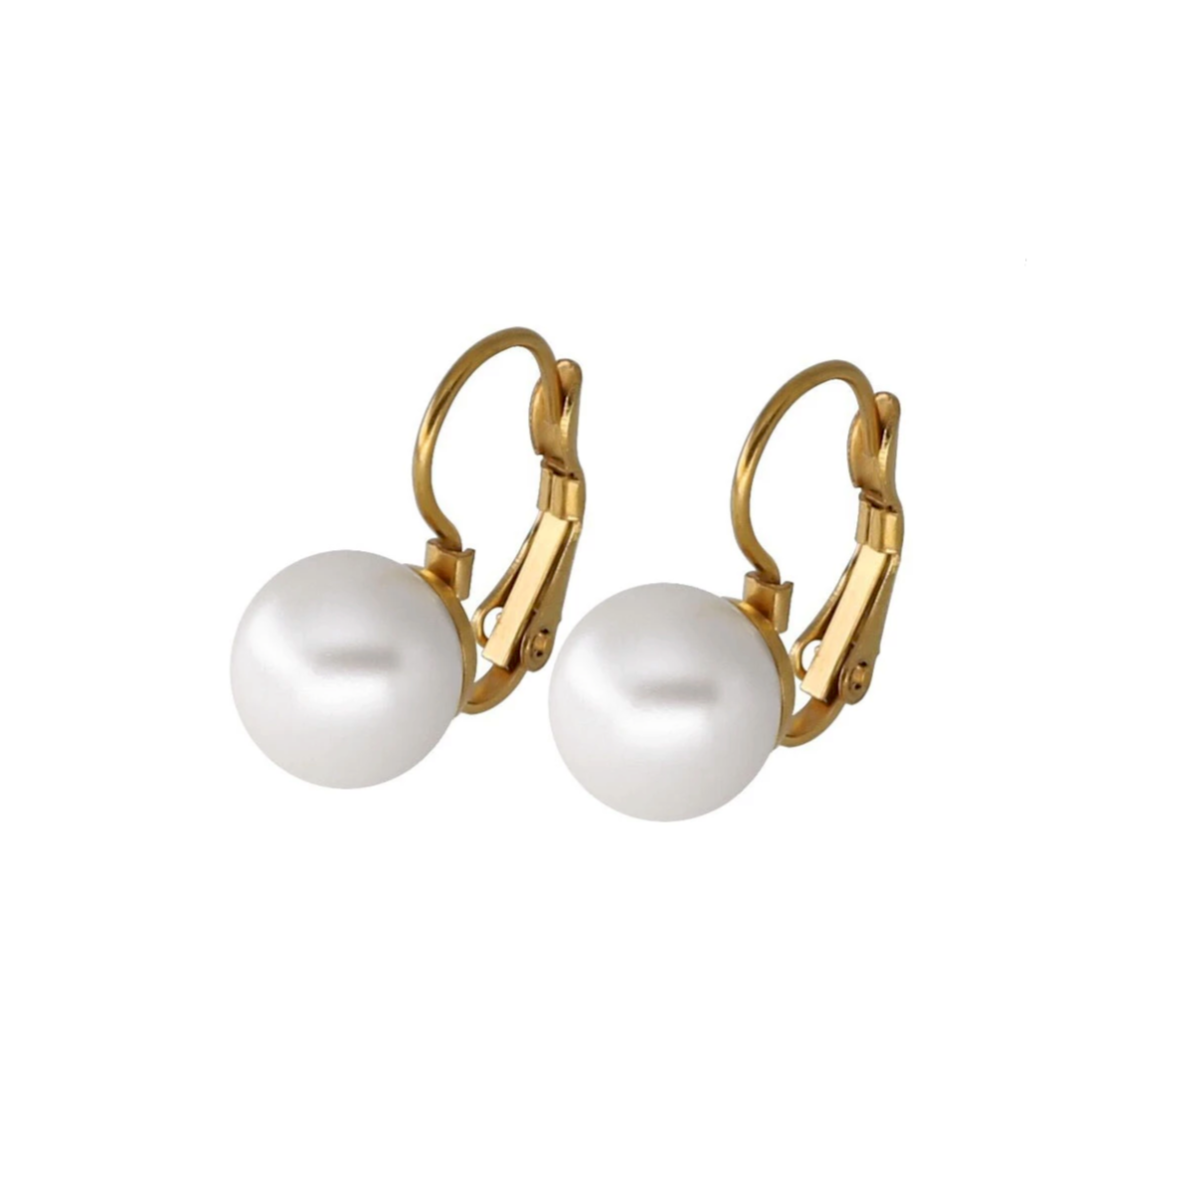 Boucles d'oreilles dorées perles nacrées. Détails produit : Couleur or. Métal doré. Perles nacrées.